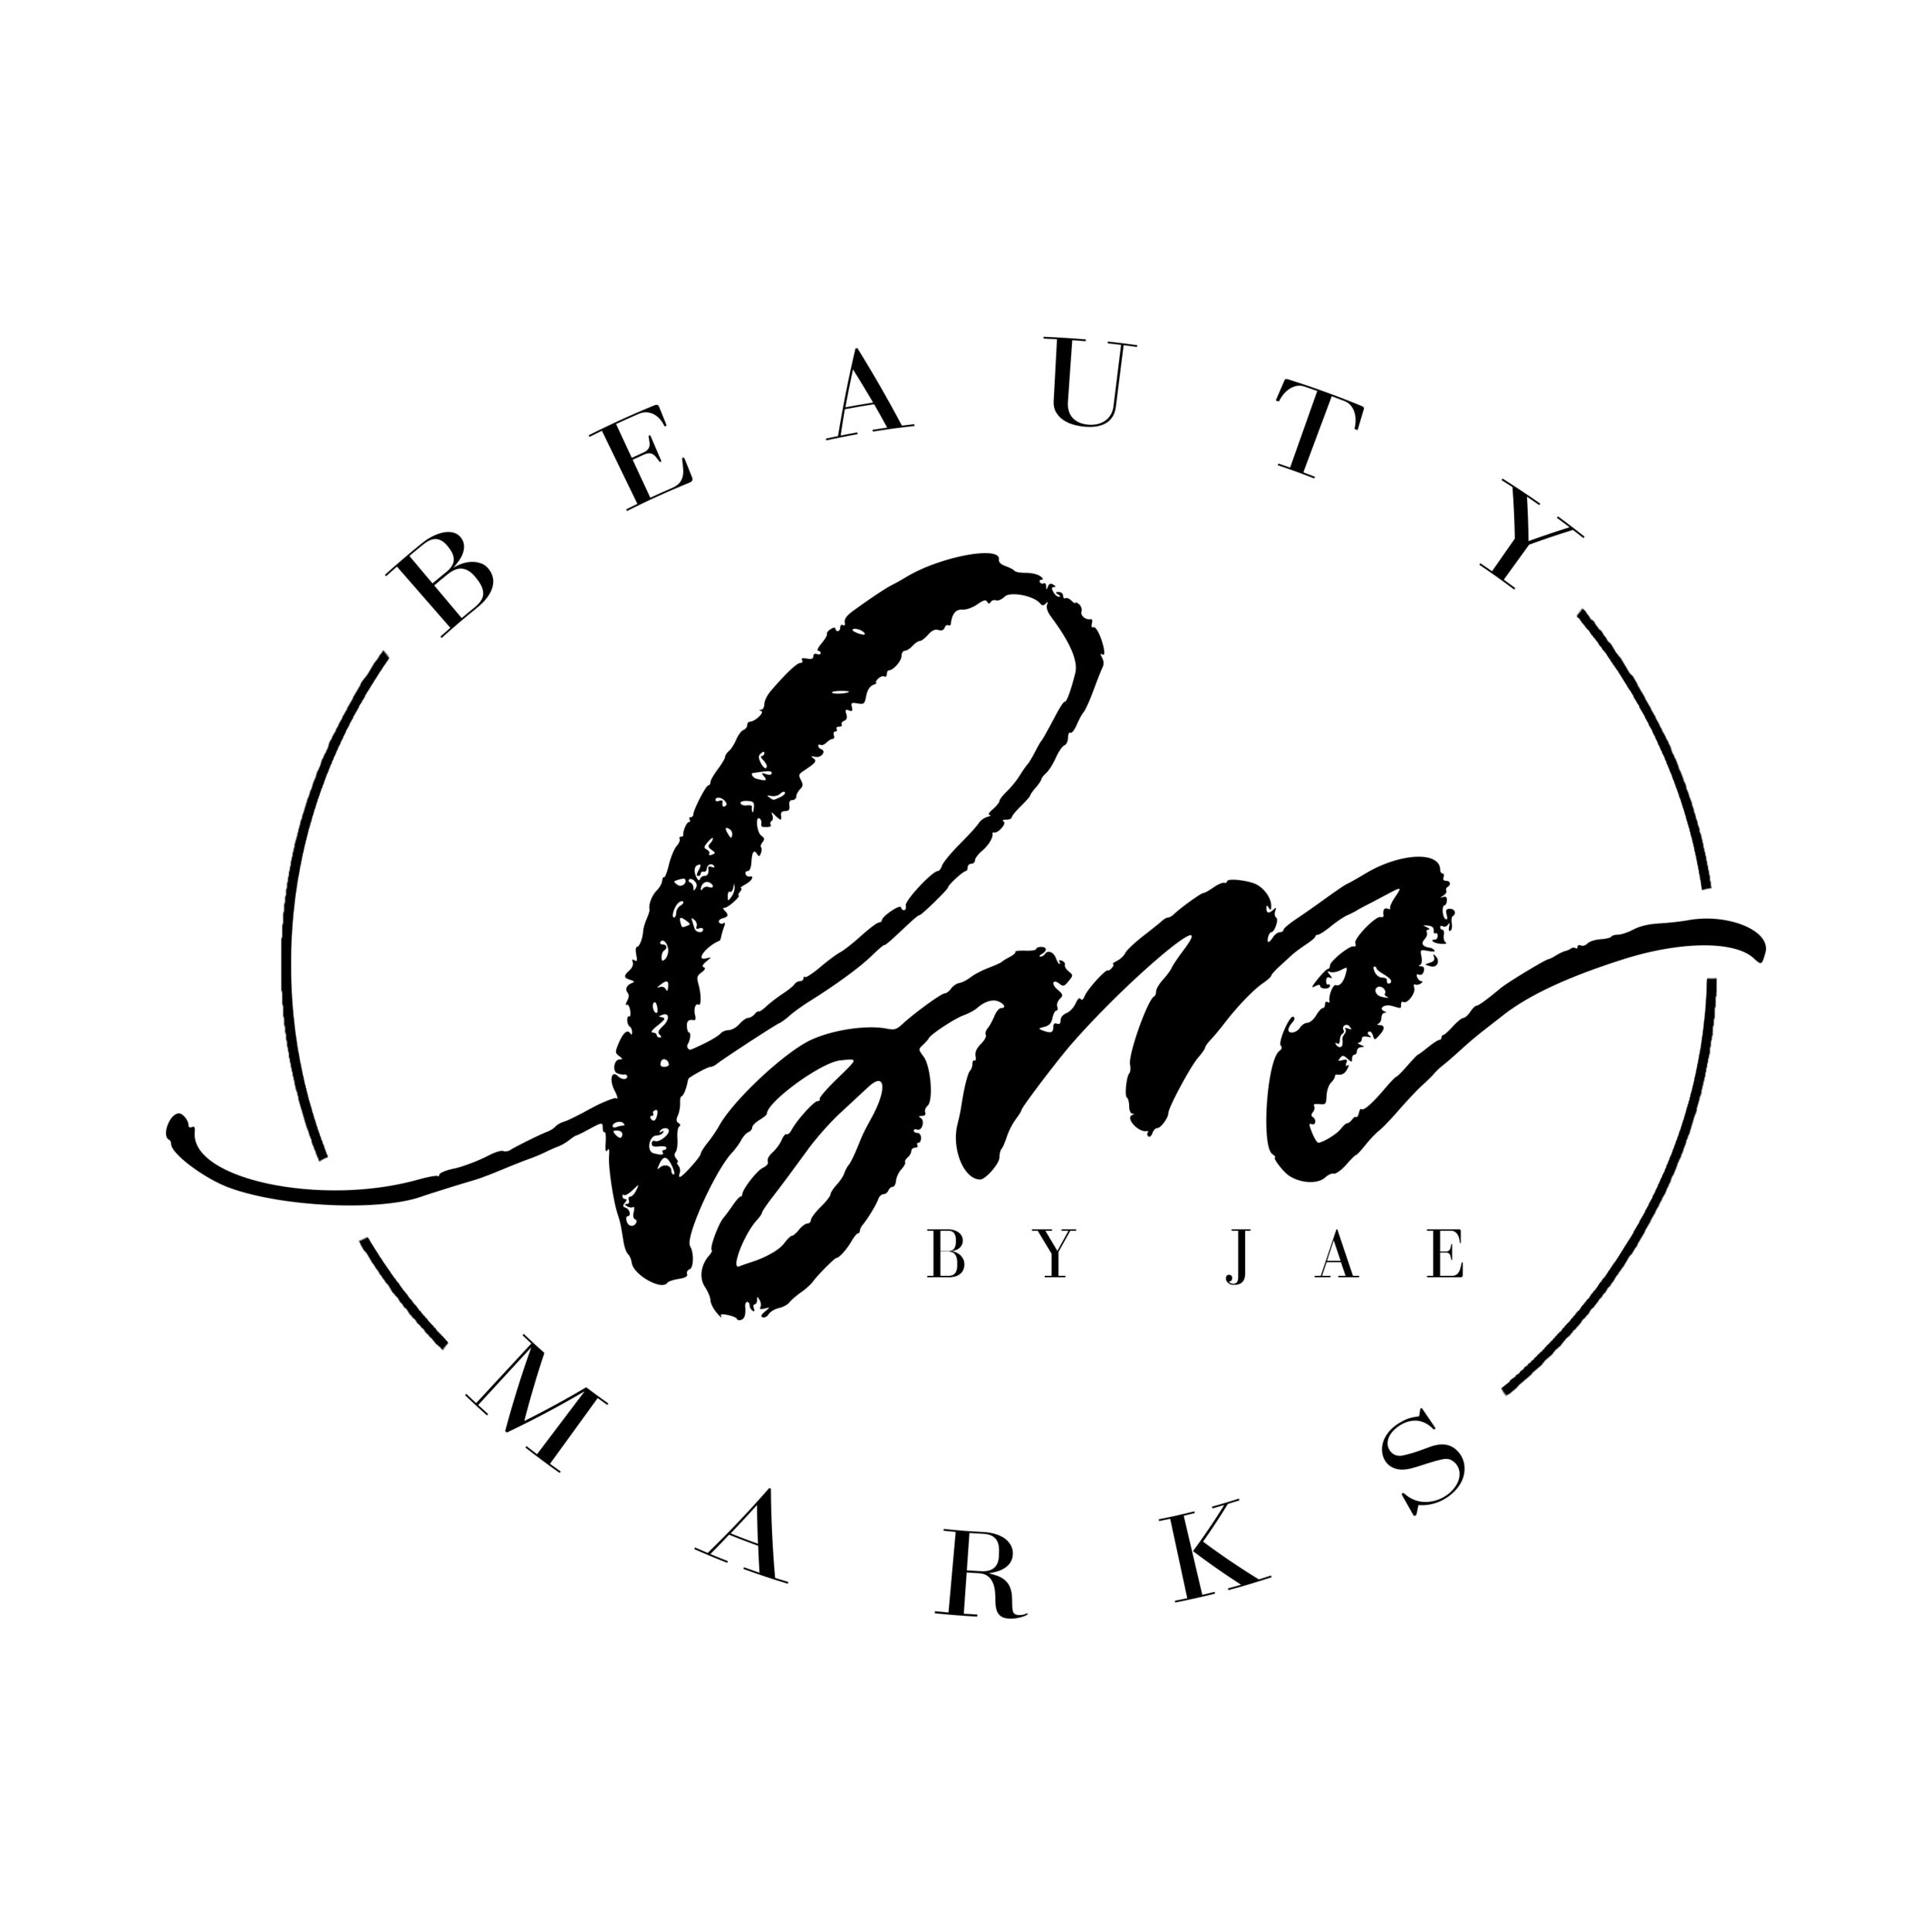 Beauty Mark. Meilimark/Beauty Mark. Beauty Mark meaning.